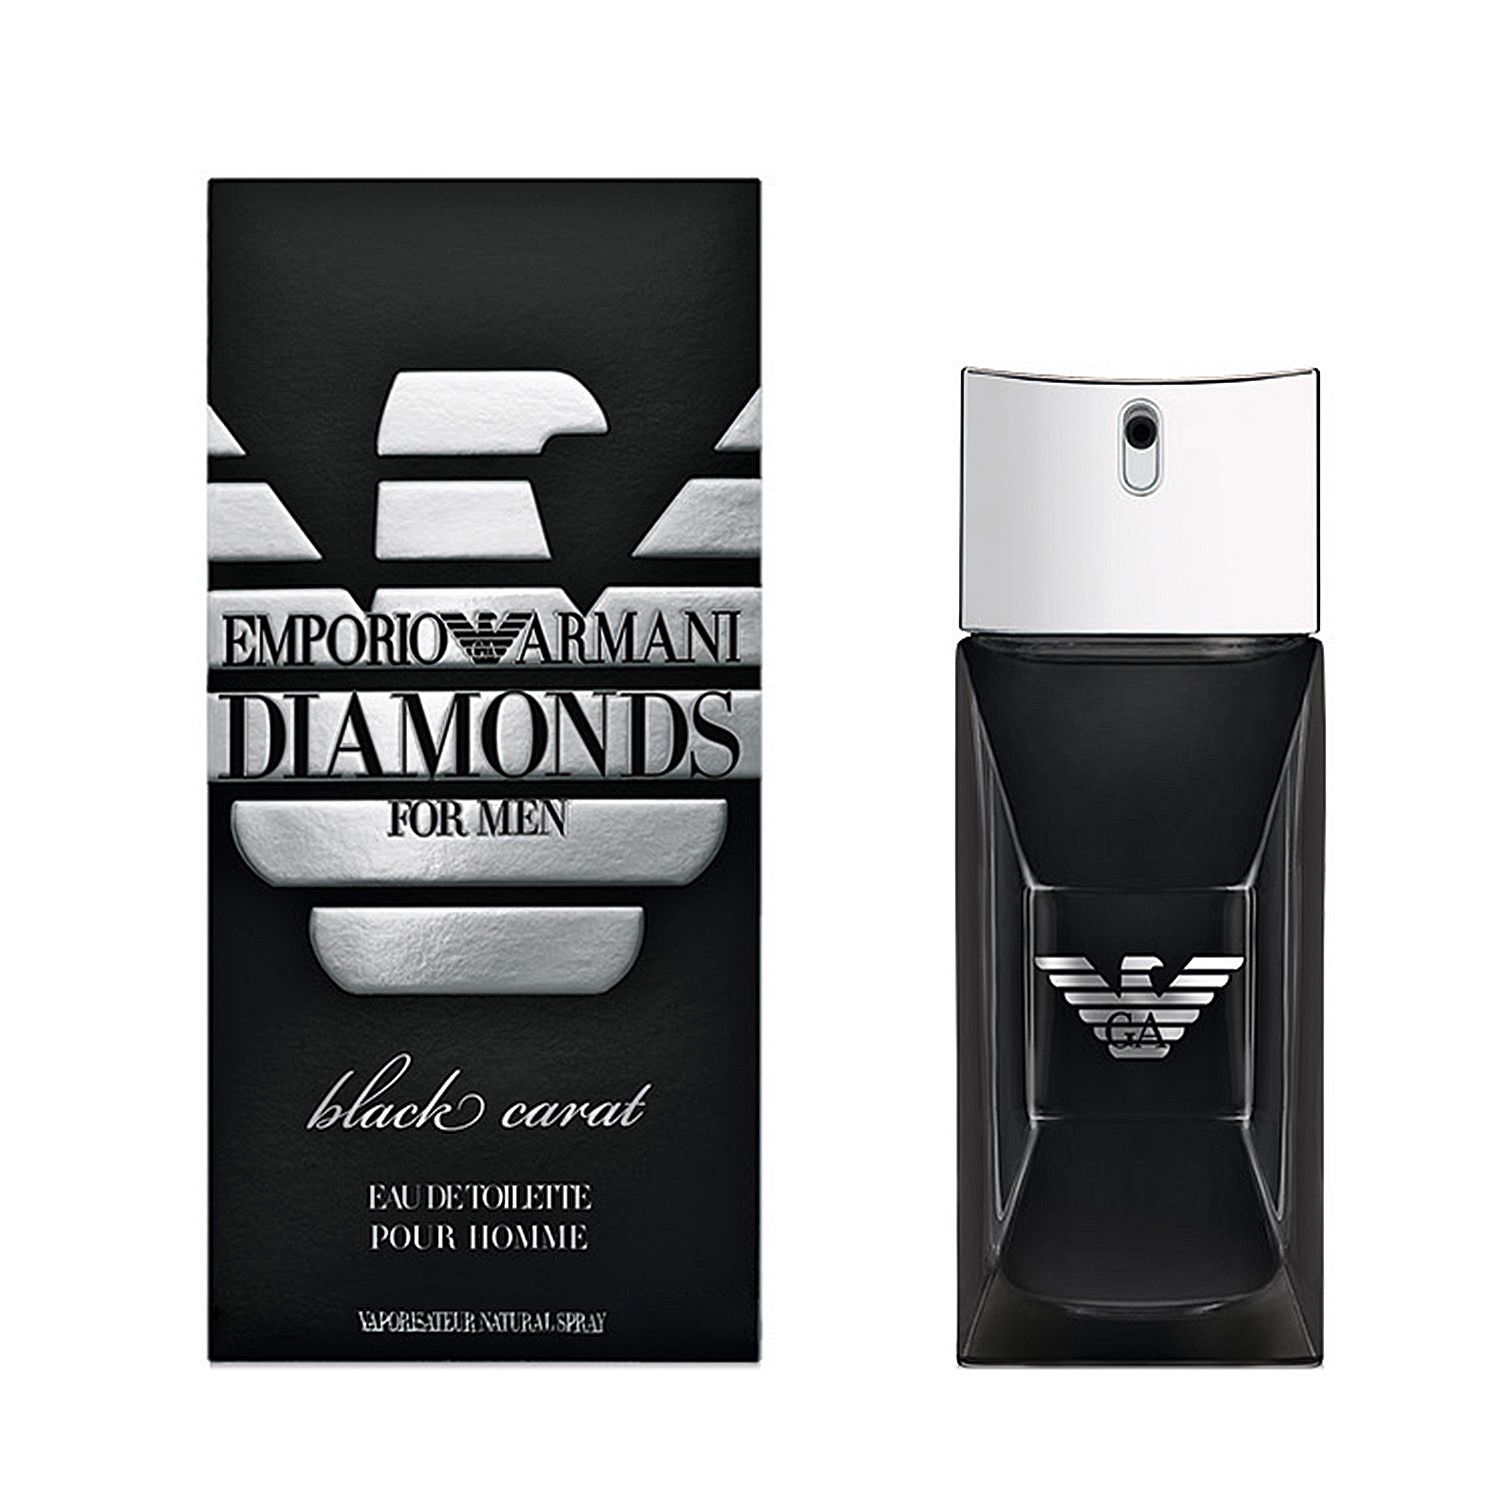 Emporio Armani Diamonds Black Carat Men 